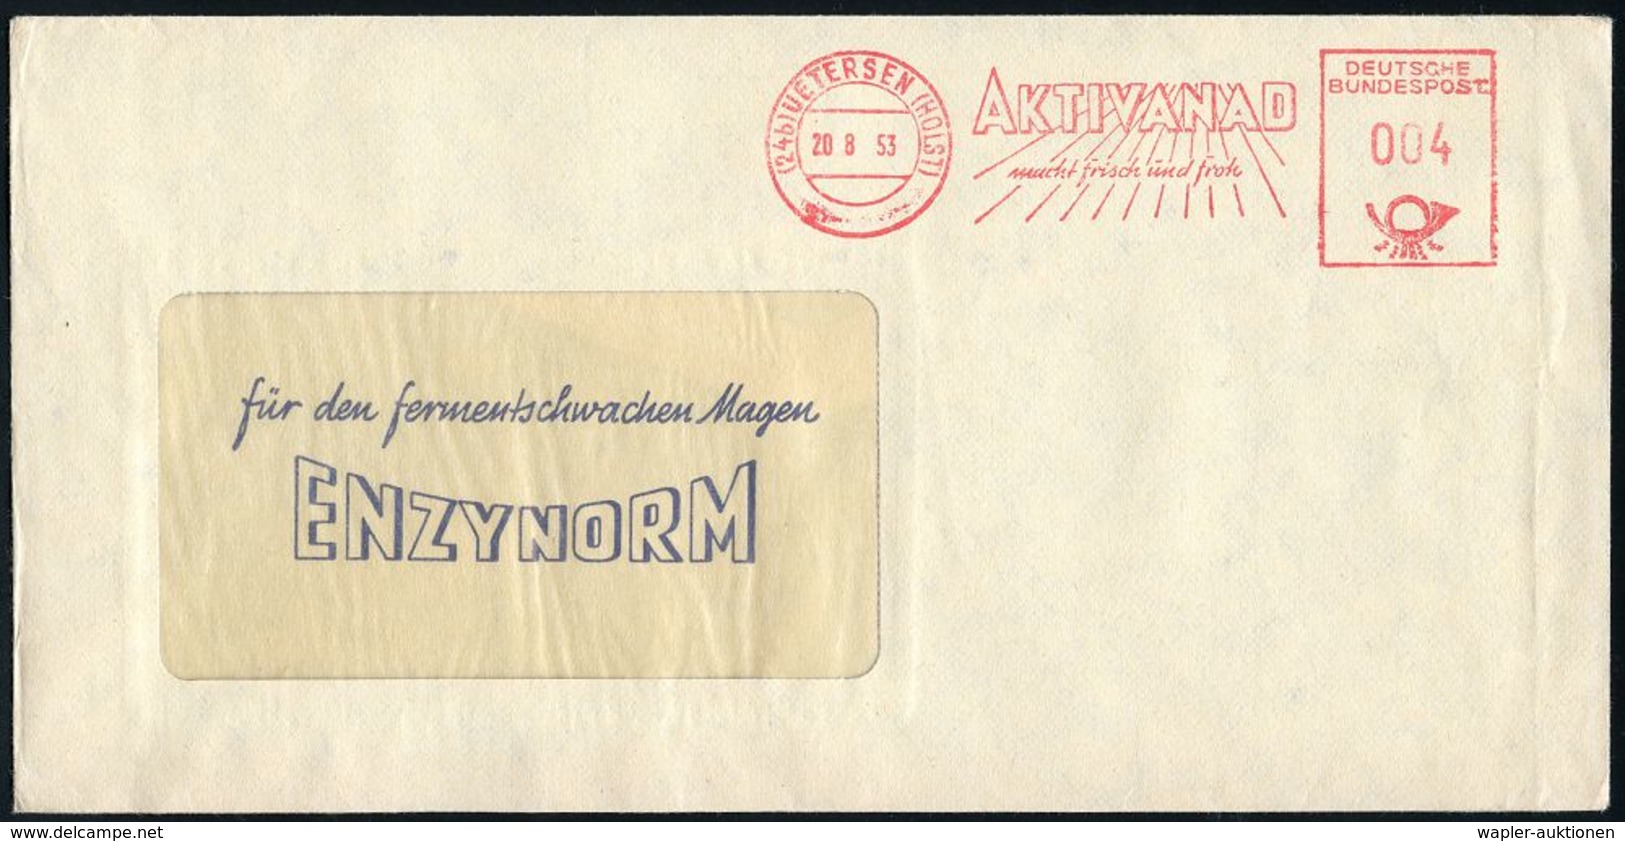 PHARMAZIE / MEDIKAMENTE : (24b) UETERSEN (HOLST)/ AKTIVANAD/ Mach Frisch U.froh 1953 (20.8.) AFS Auf Reklame-Bf.:ENZYNOR - Pharmacie